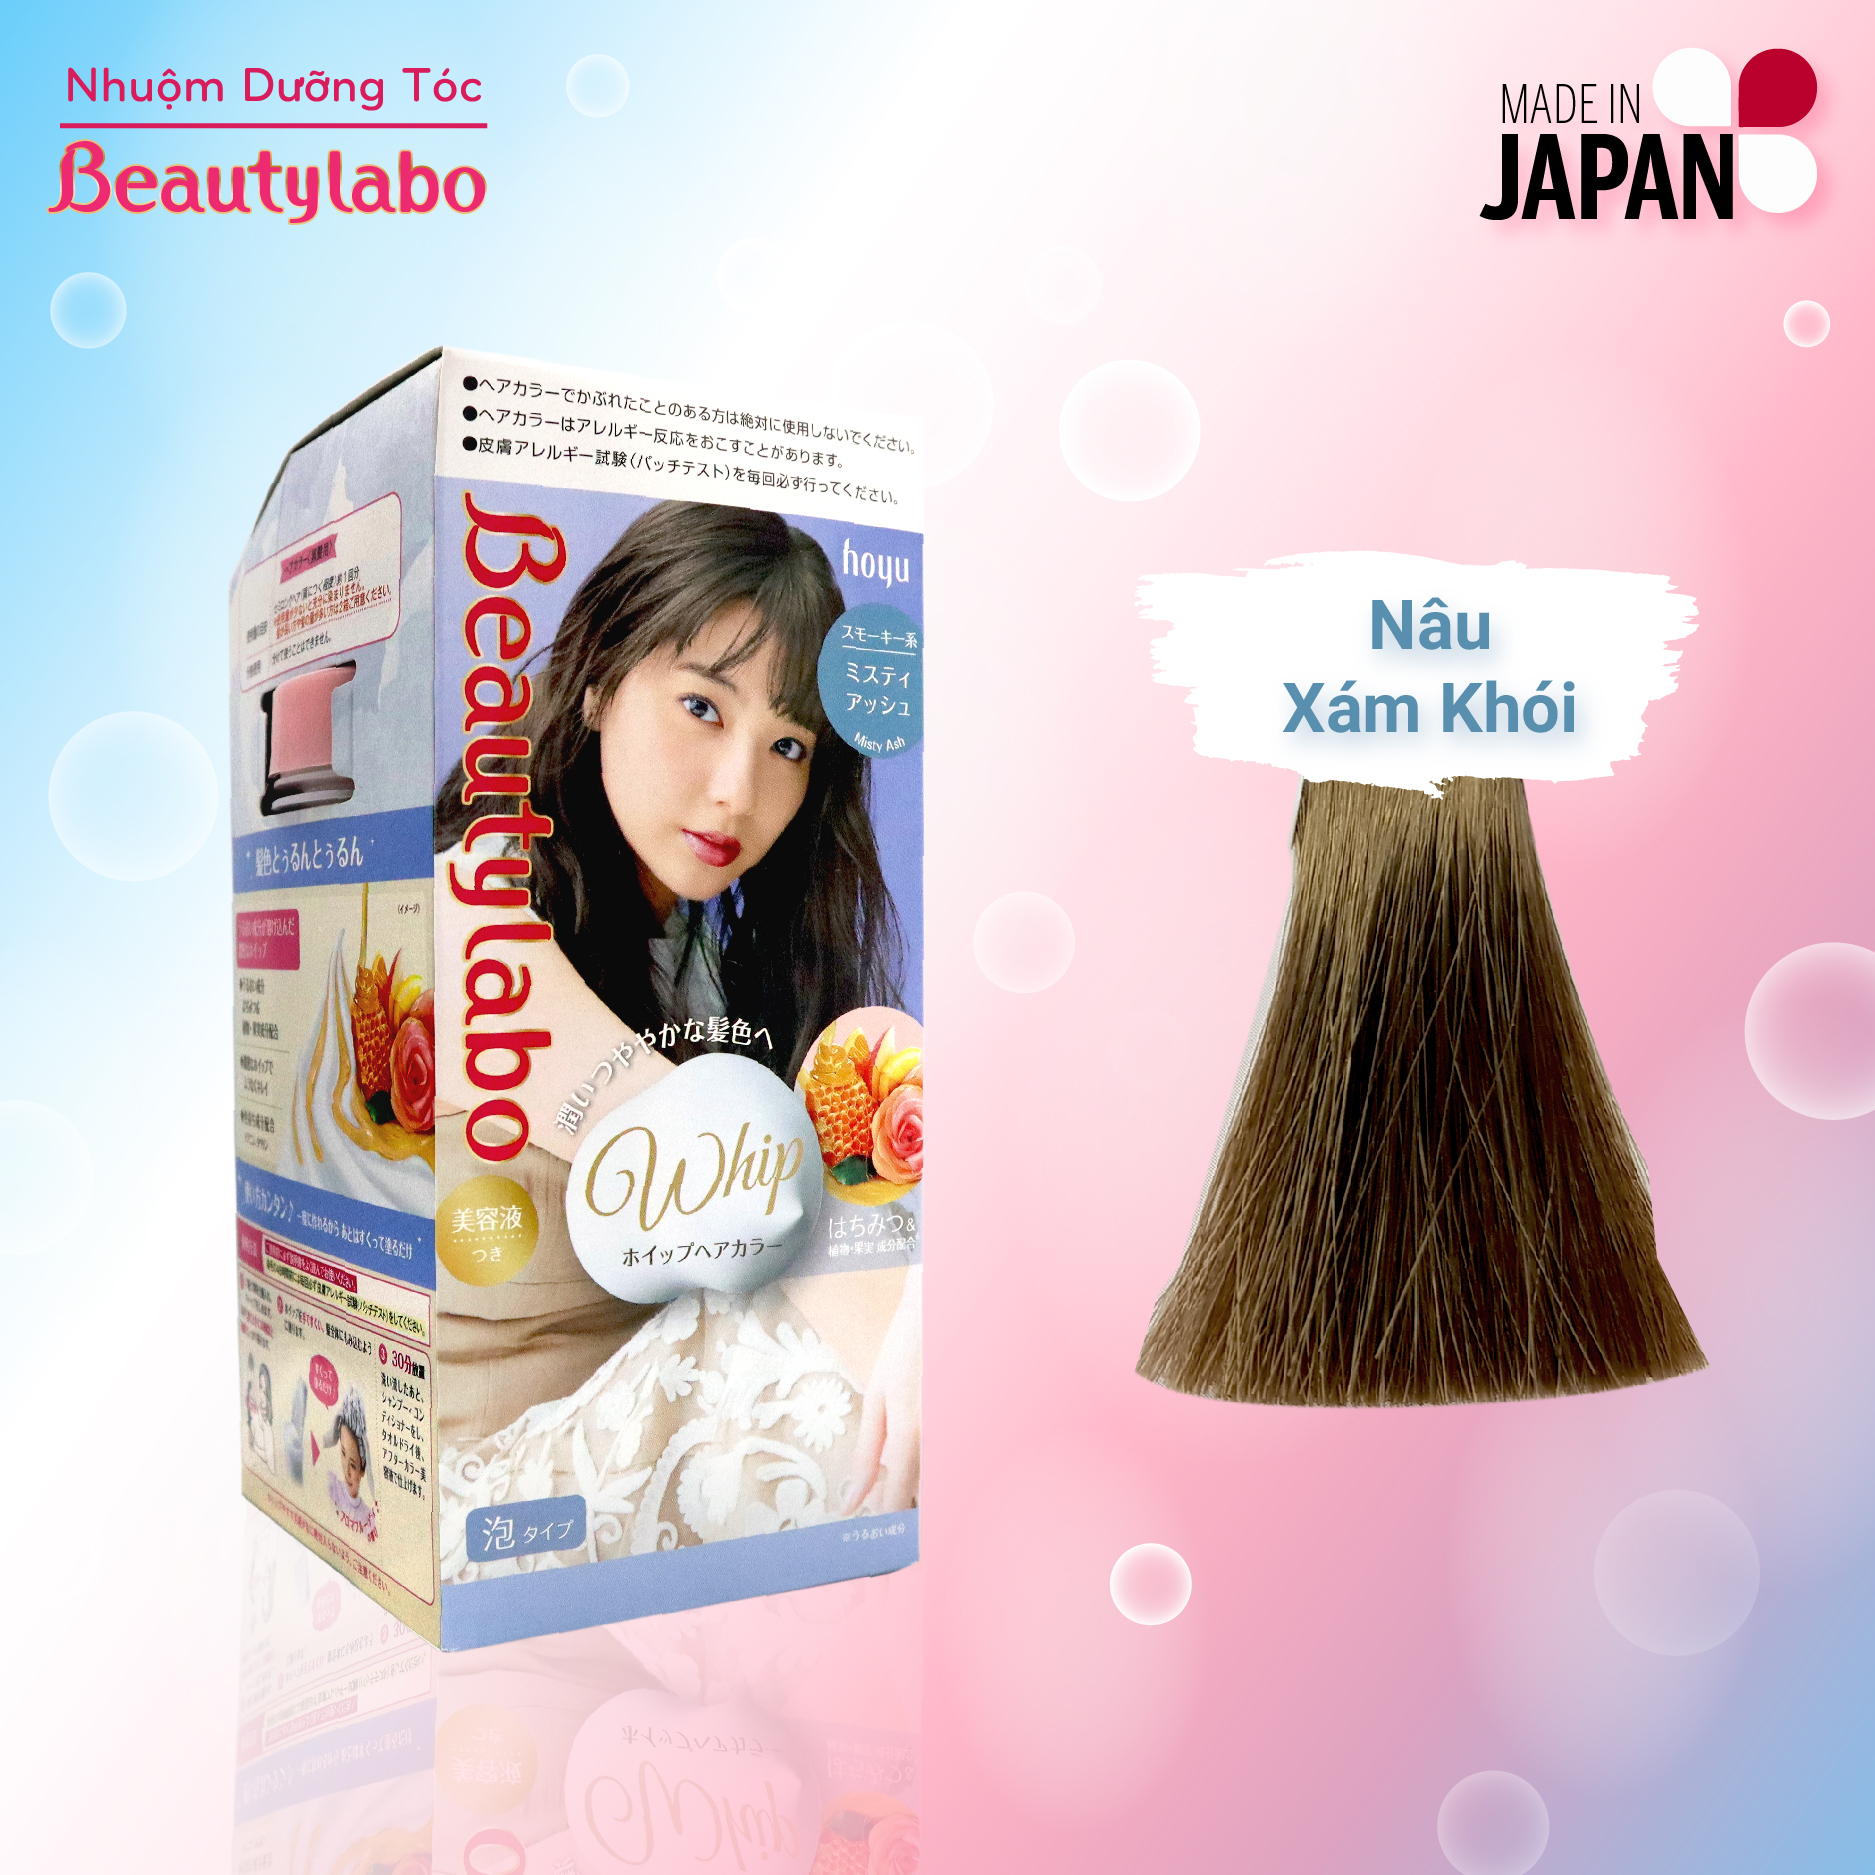 Nếu bạn đang tìm kiếm một sản phẩm nhuộm tóc chất lượng và tiện lợi thì Beautylabo Whip Hair sẽ là sự lựa chọn hoàn hảo cho bạn. Sản phẩm này giúp cho tóc của bạn trở nên mềm mại và bóng loáng đồng thời cung cấp cho bạn màu sắc tươi sáng và hấp dẫn.